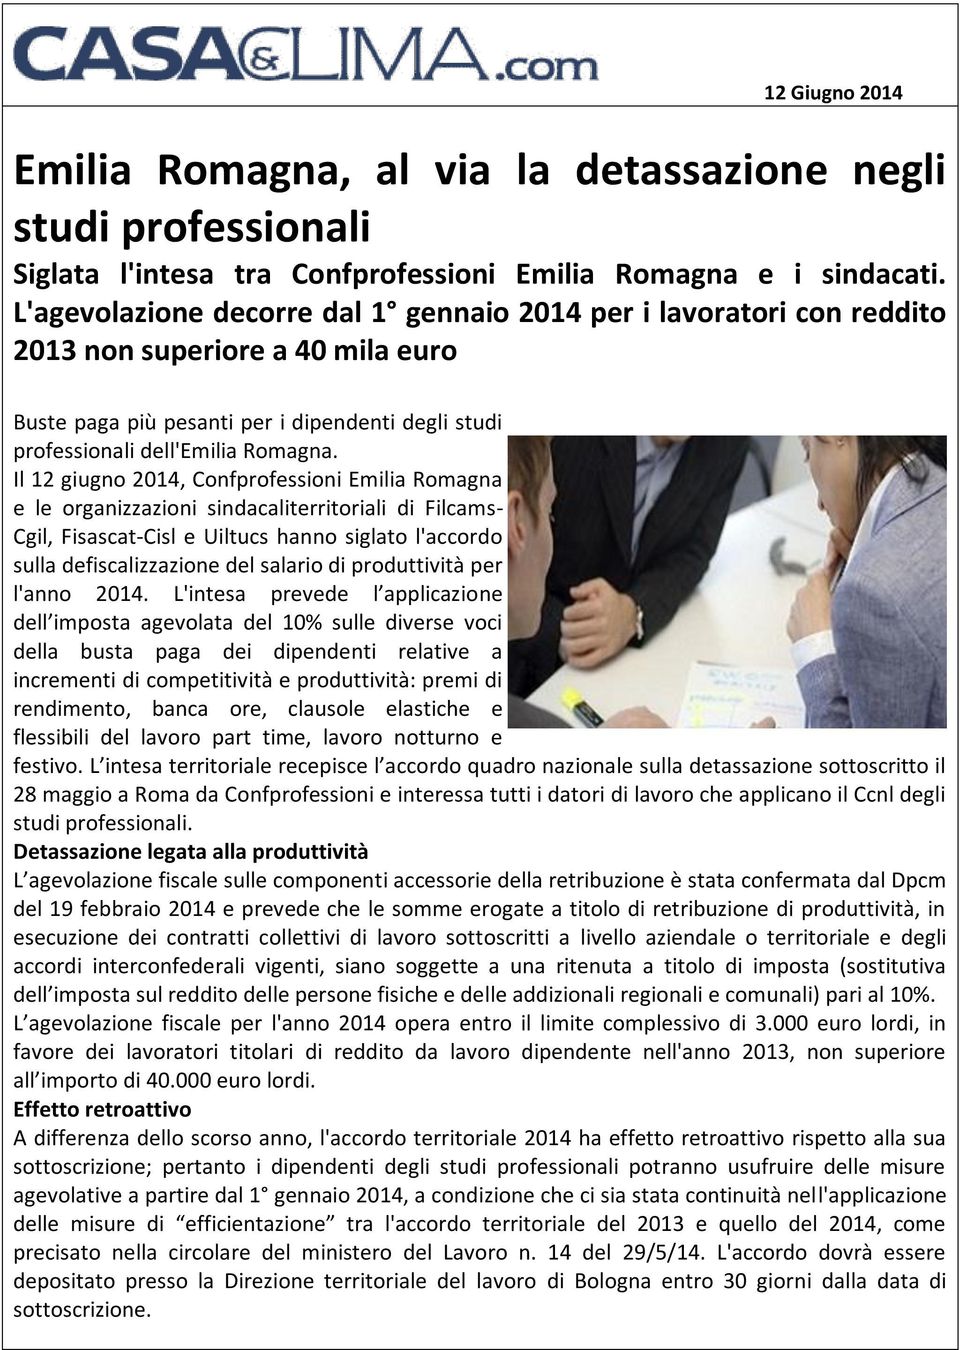 Il 12 giugno 2014, Confprofessioni Emilia Romagna e le organizzazioni sindacaliterritoriali di Filcams- Cgil, Fisascat-Cisl e Uiltucs hanno siglato l'accordo sulla defiscalizzazione del salario di